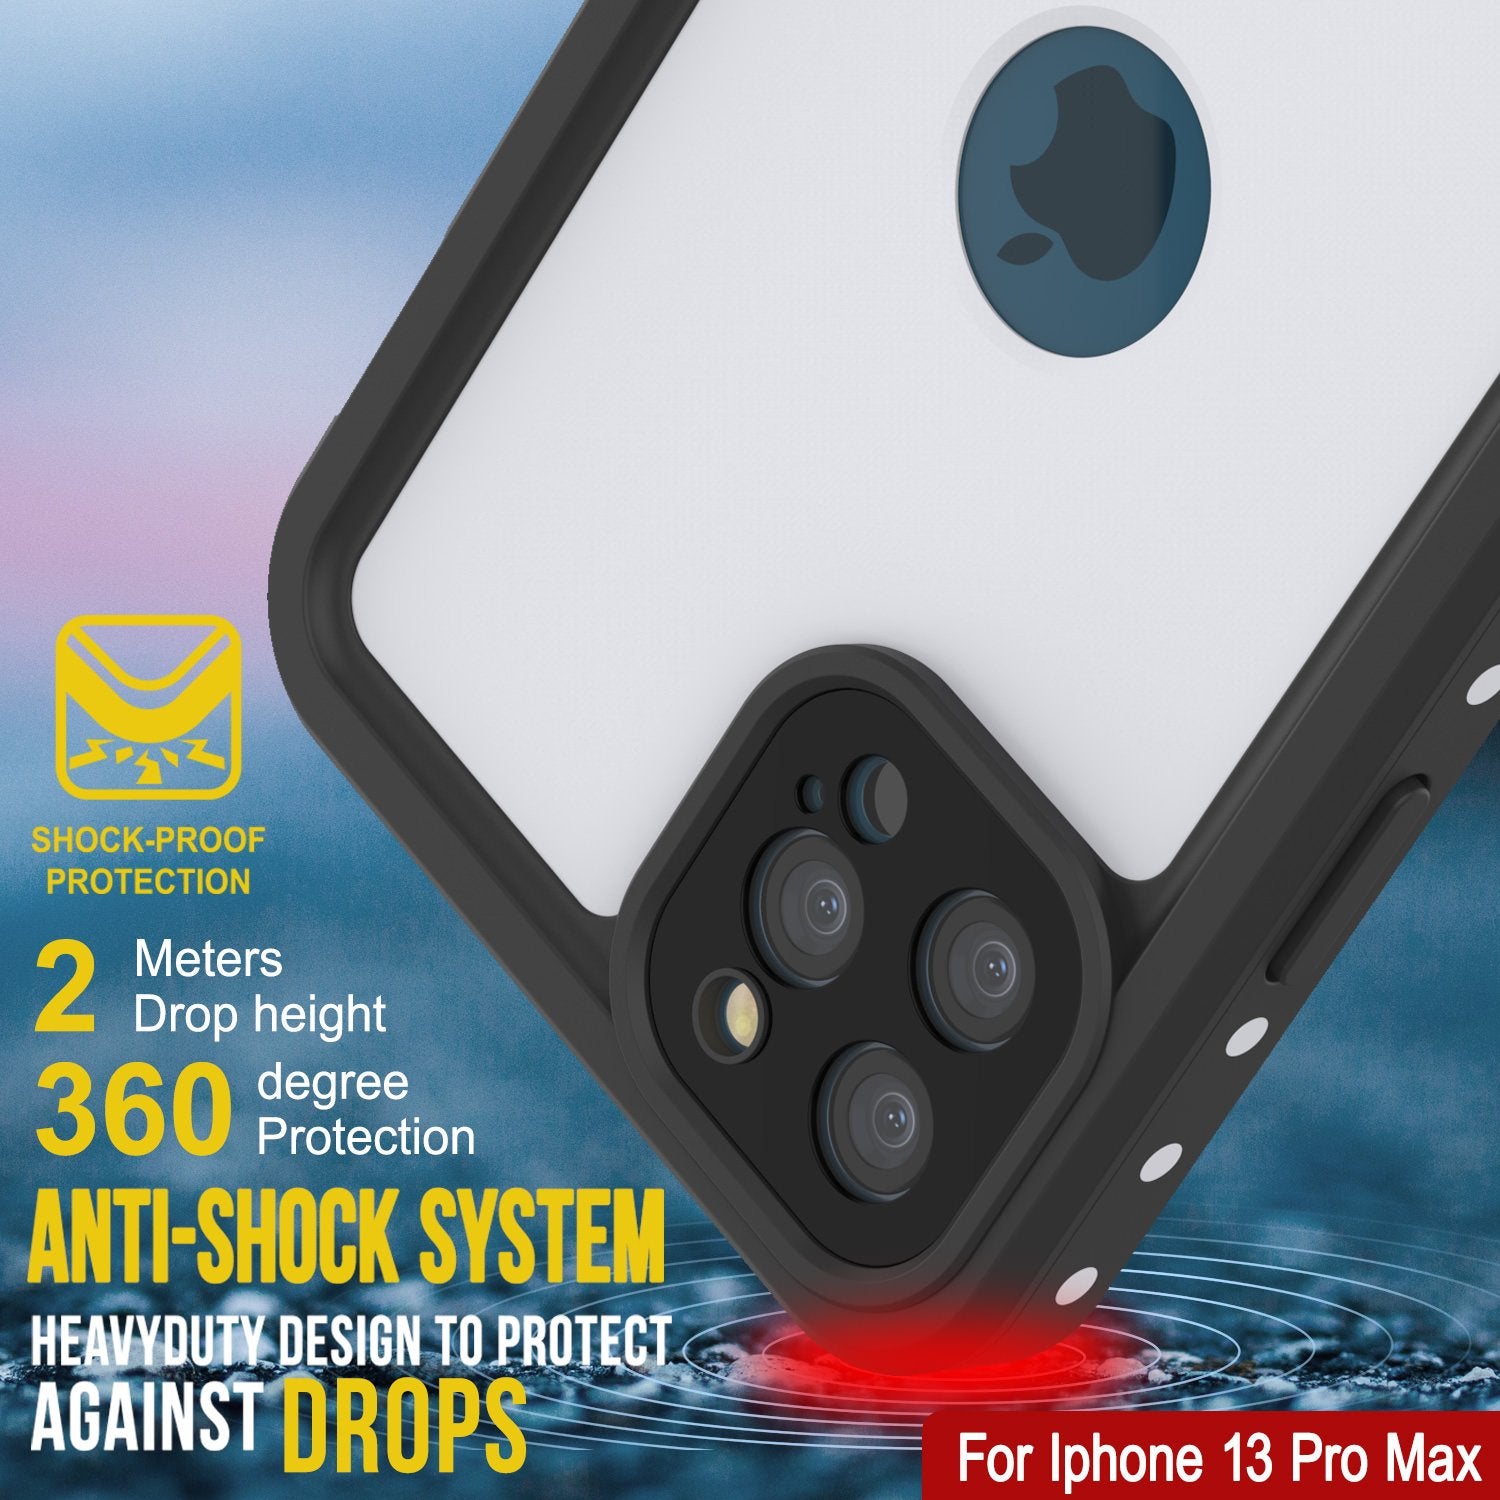 iPhone 13 Pro Max Waterproof IP68 Case, Punkcase [White] [StudStar Series] [Slim Fit] [Dirtproof]